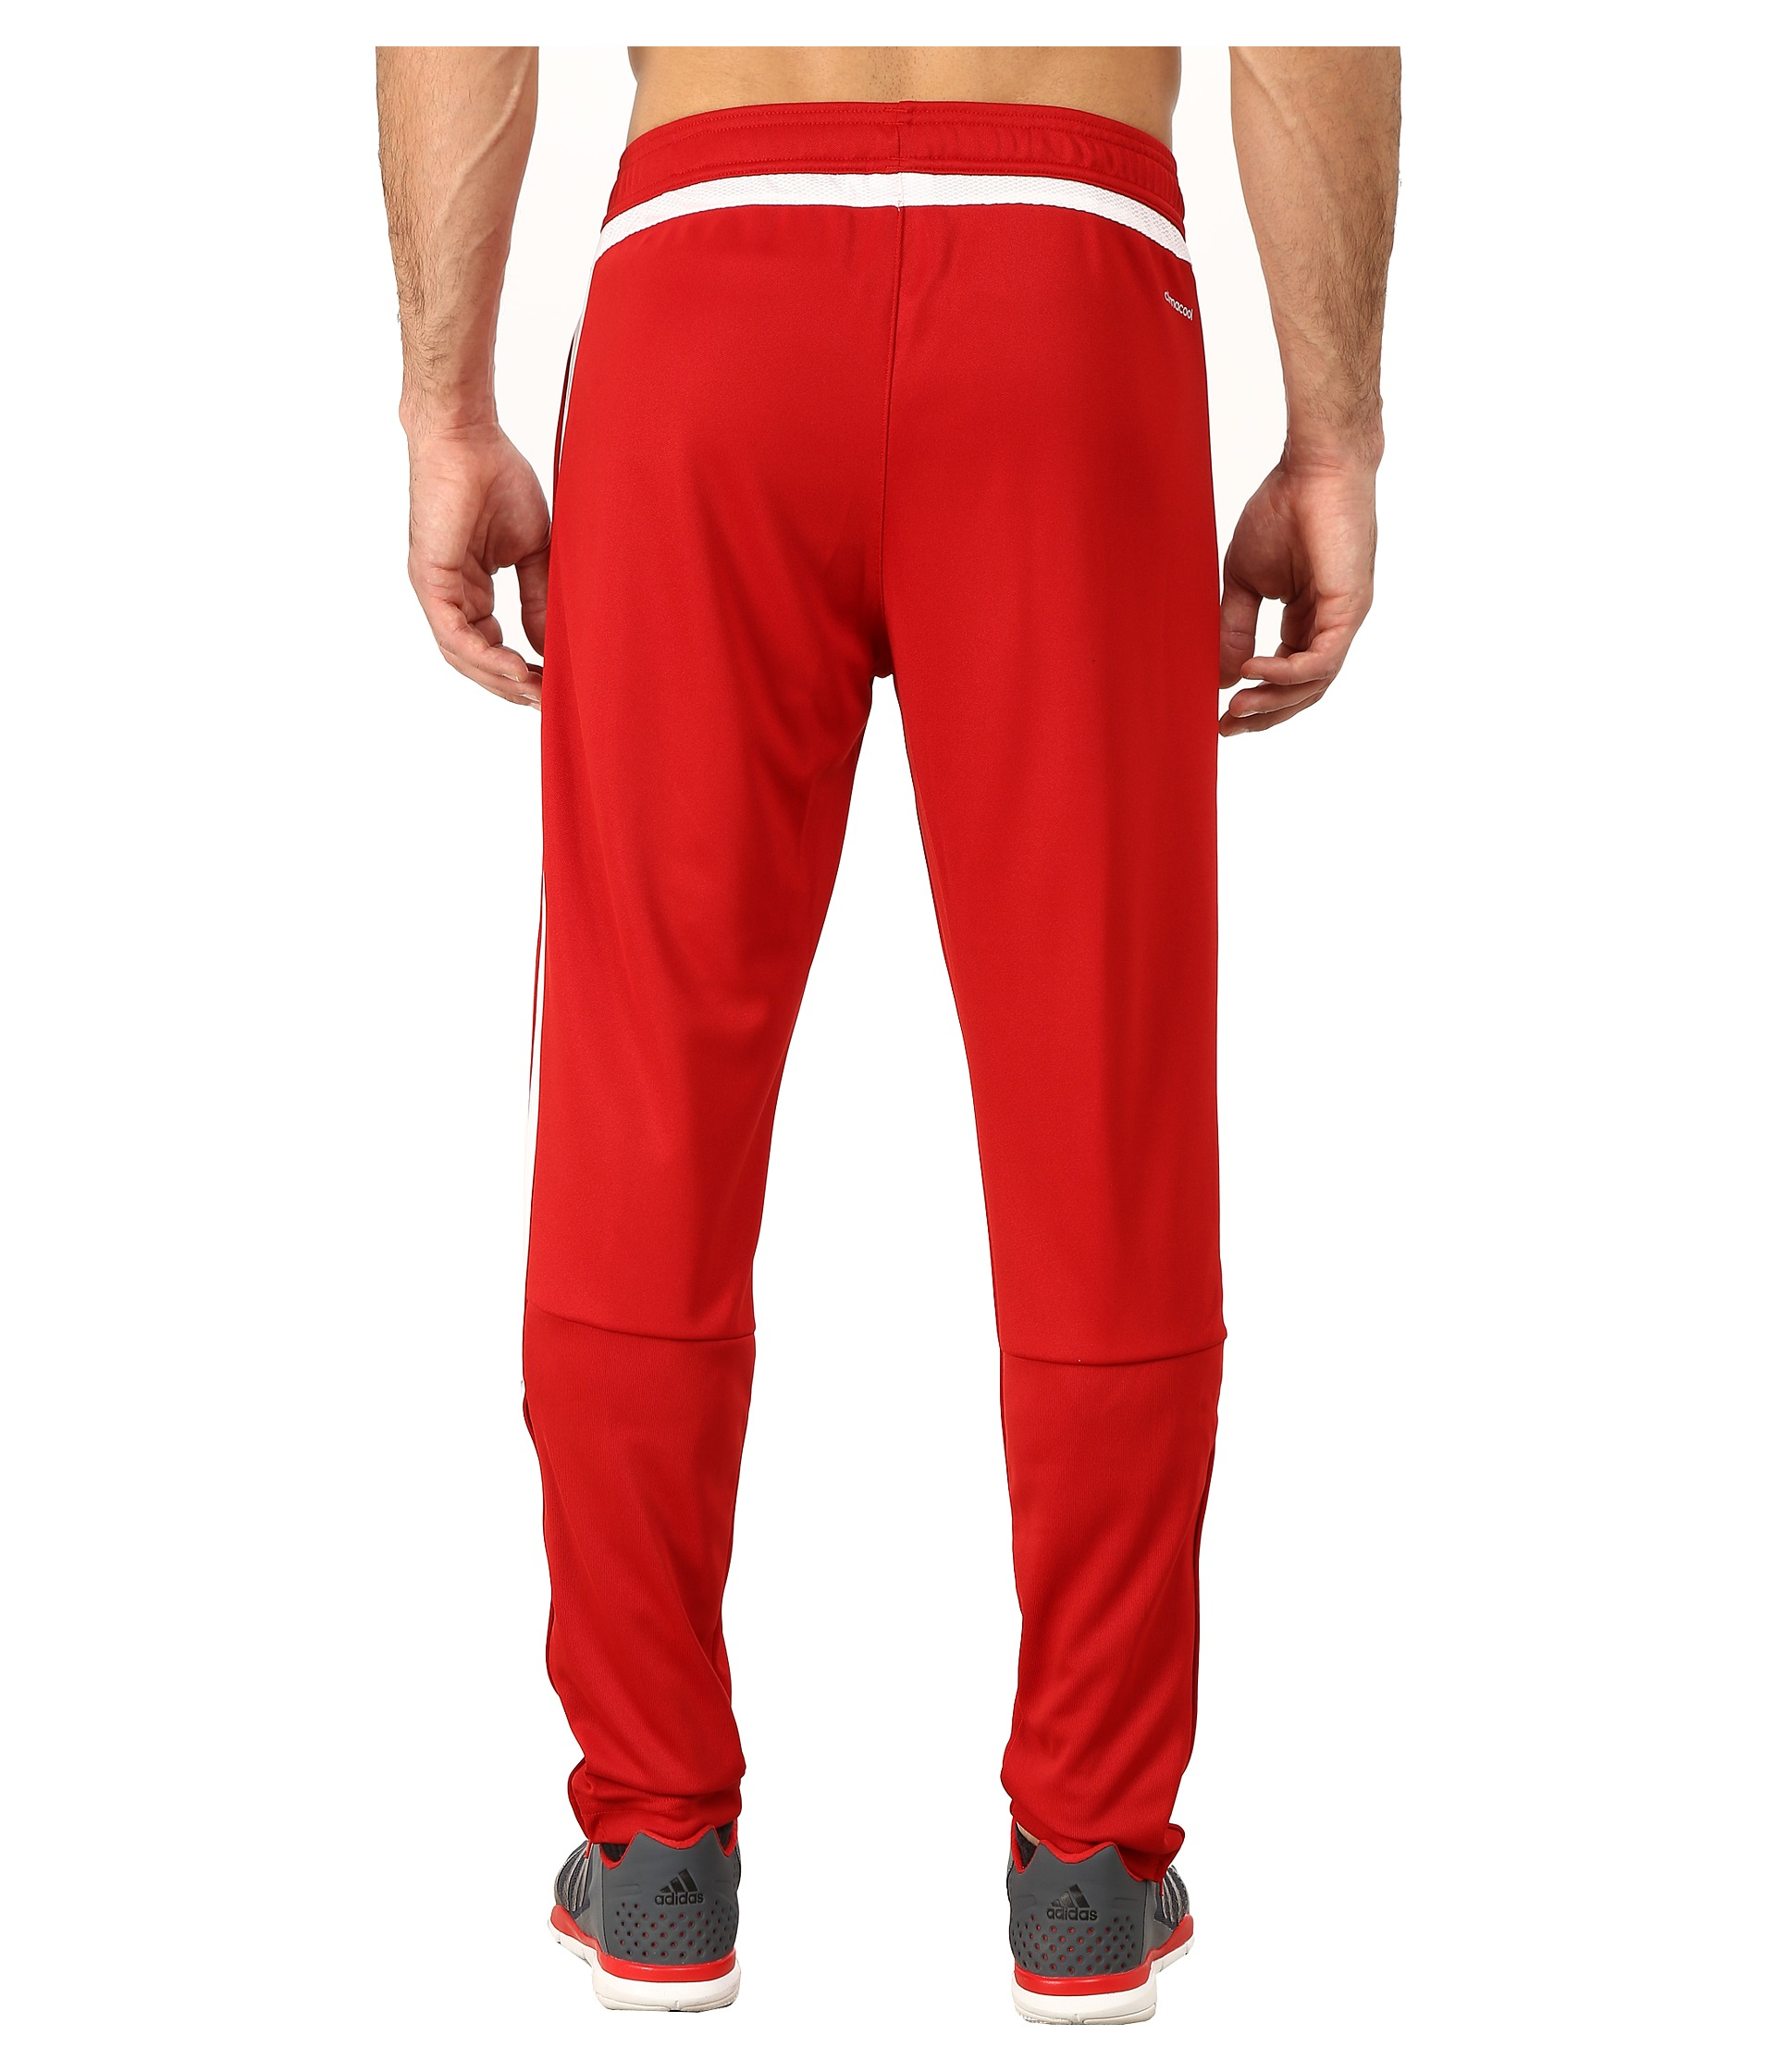 Lyst - Adidas Originals Tiro 15 Training Pant in Red for Men